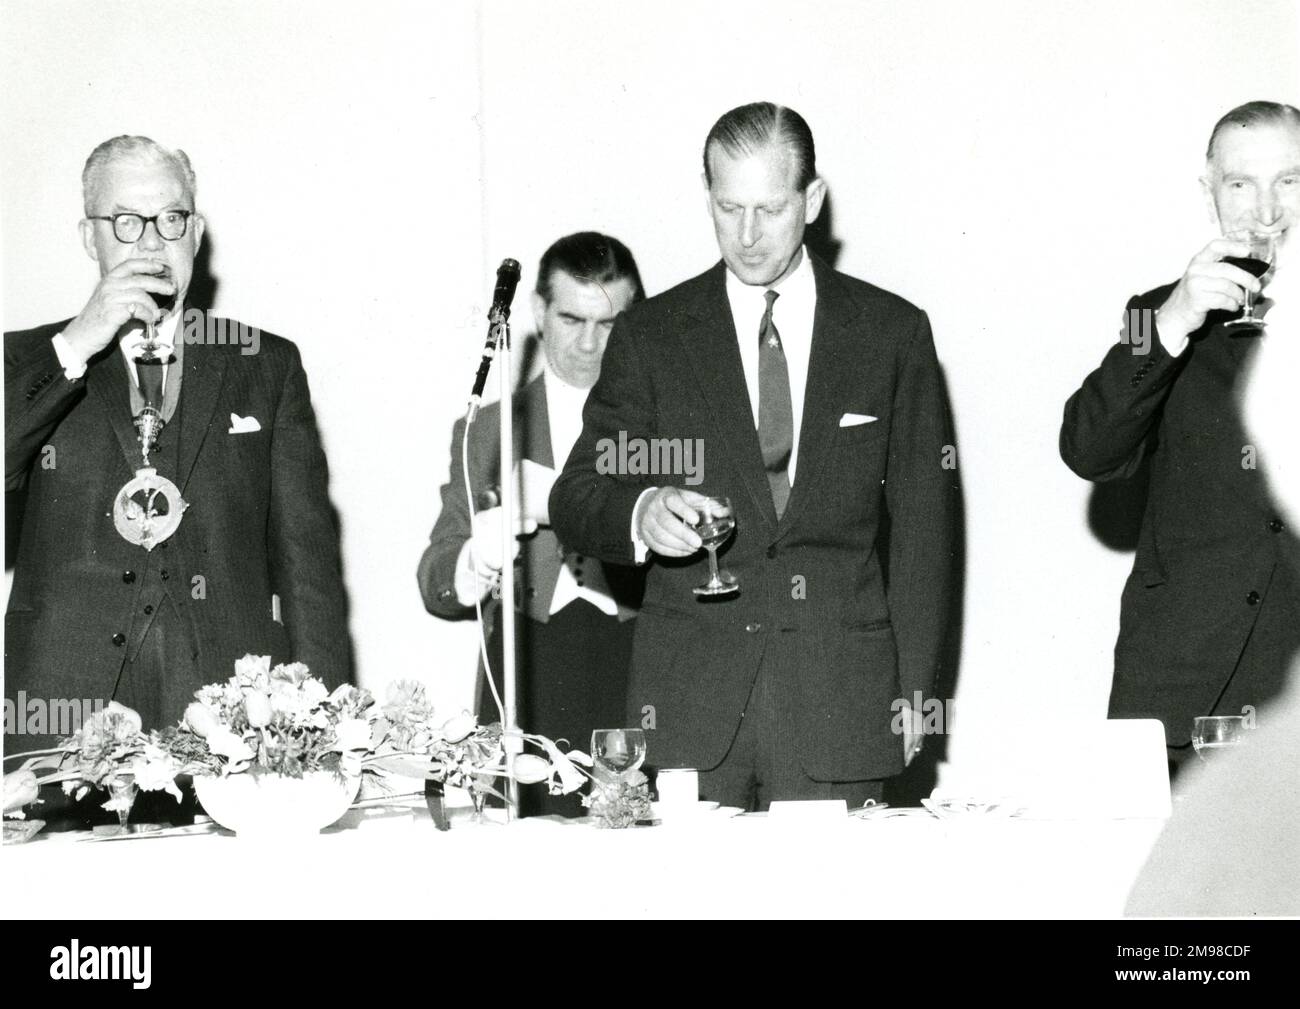 HRH le prince Philip, duc d'Édimbourg, président honoraire de la Royal Aeronautical Society, propose le toast au déjeuner donné par le président et le conseil le 5 mai 1966 à l'Europa Hotel, Londres. De gauche à droite : Sir George Gardner, président de Raes 1965-1966, duc d'Édimbourg et A.D. Baxter, président de Raes 1966-1967. Banque D'Images